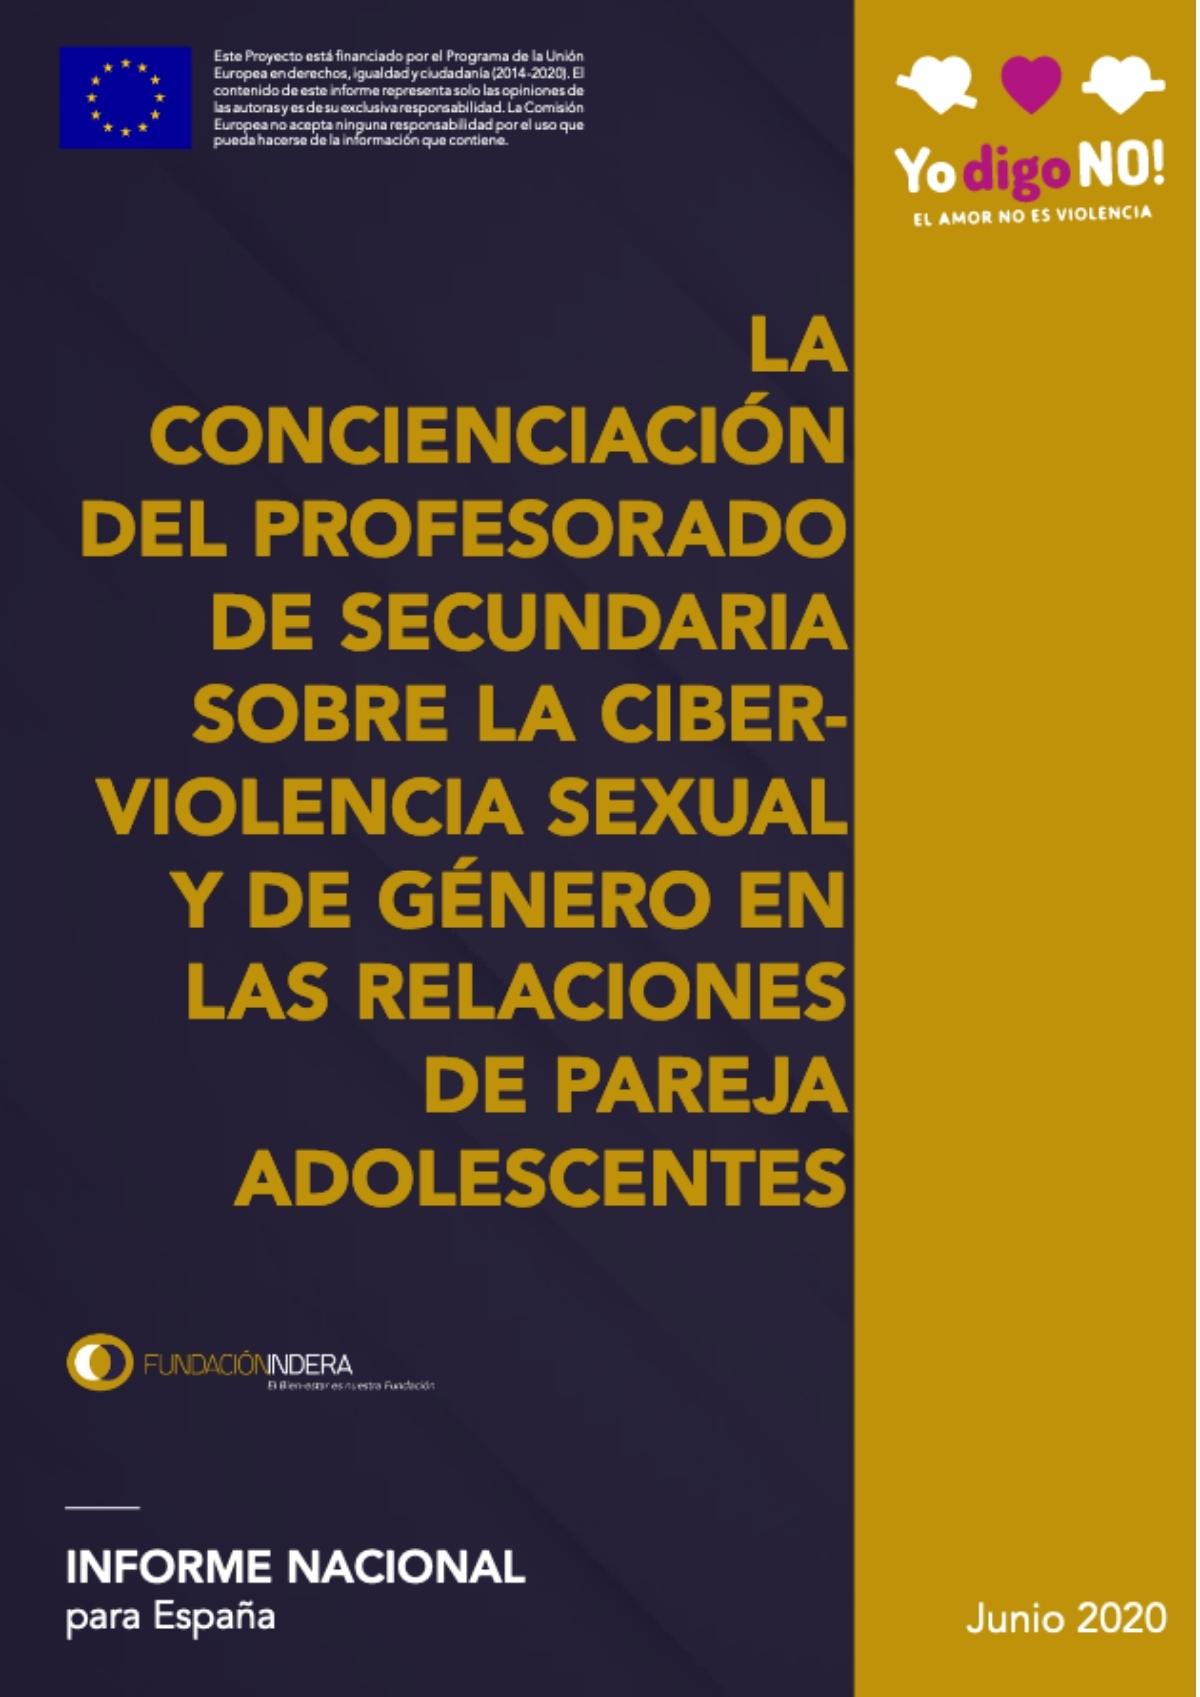 La concienciación del profesorado de secundaria sobre la ciberviolencia sexual y de género en las relaciones de pareja adolescentes en España ES